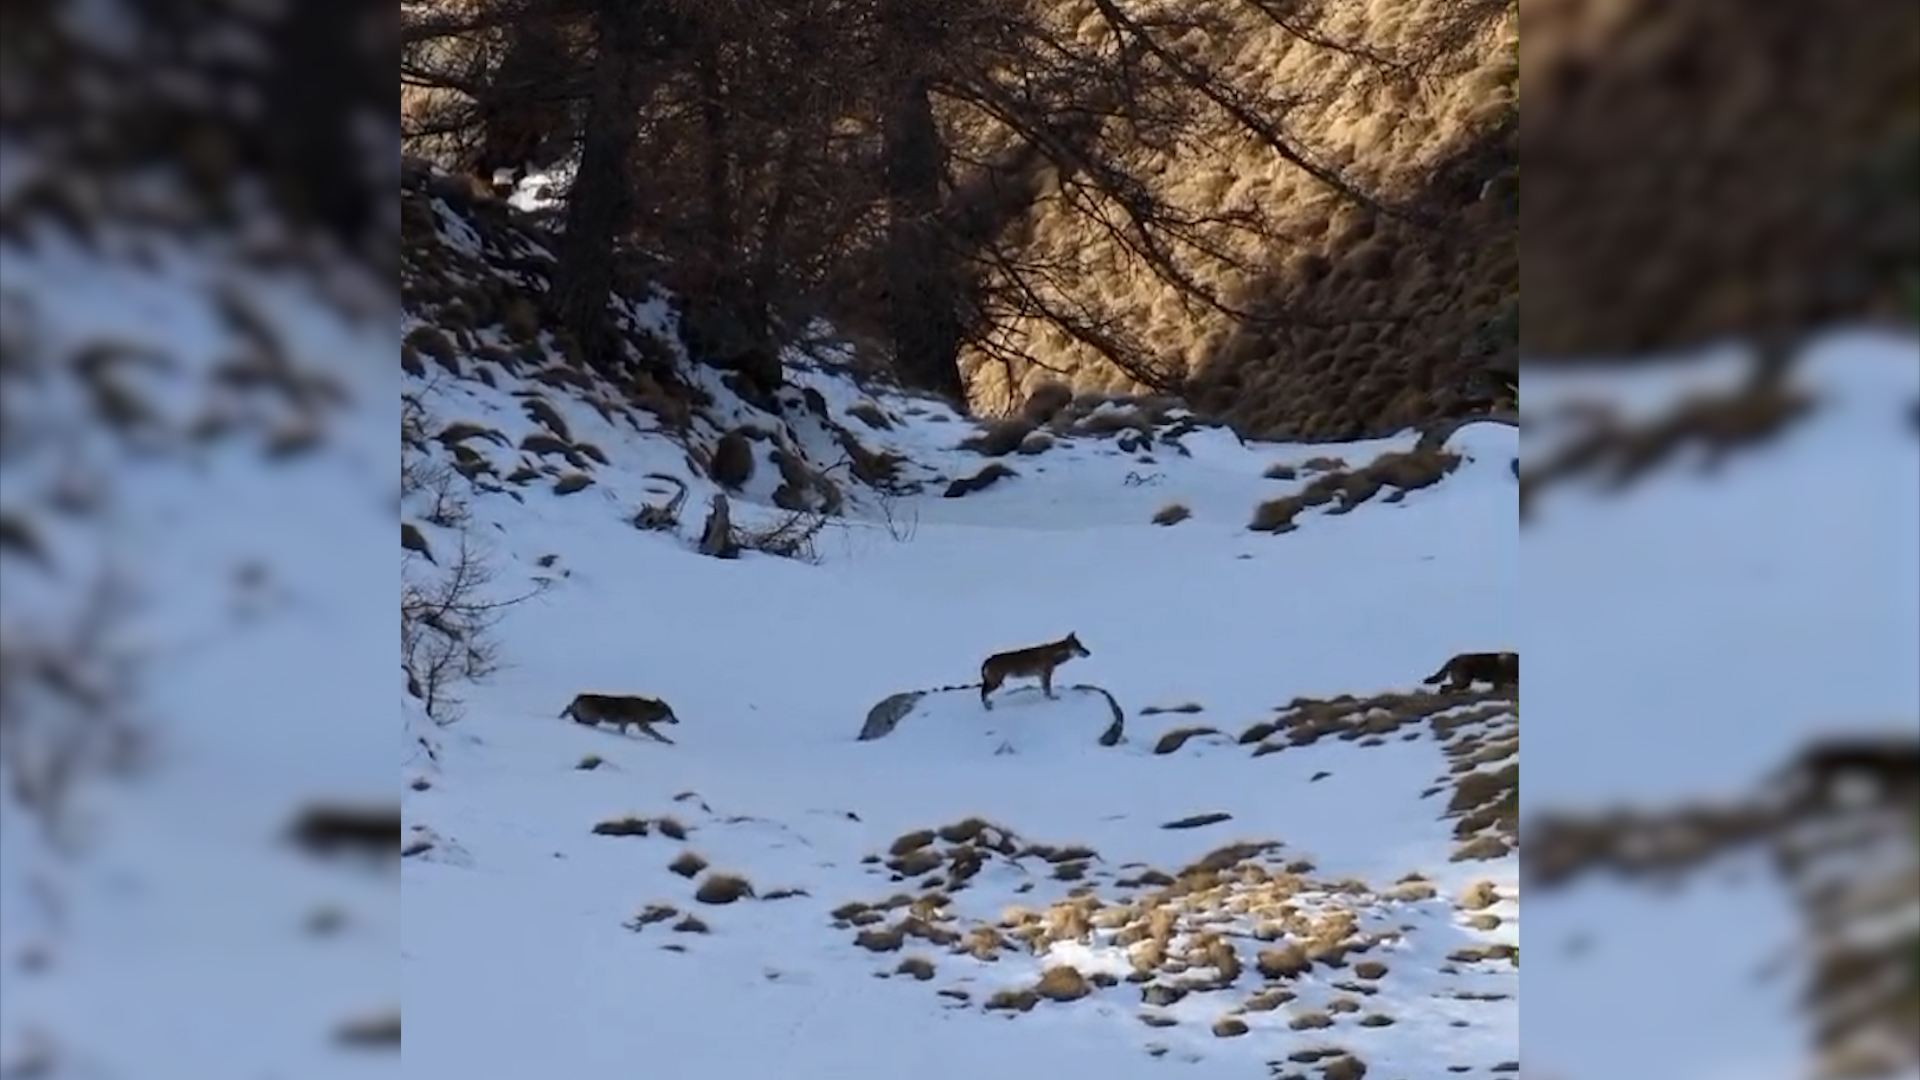 Lupi e animali selvatici in alta valle, lo spettacolo della natura